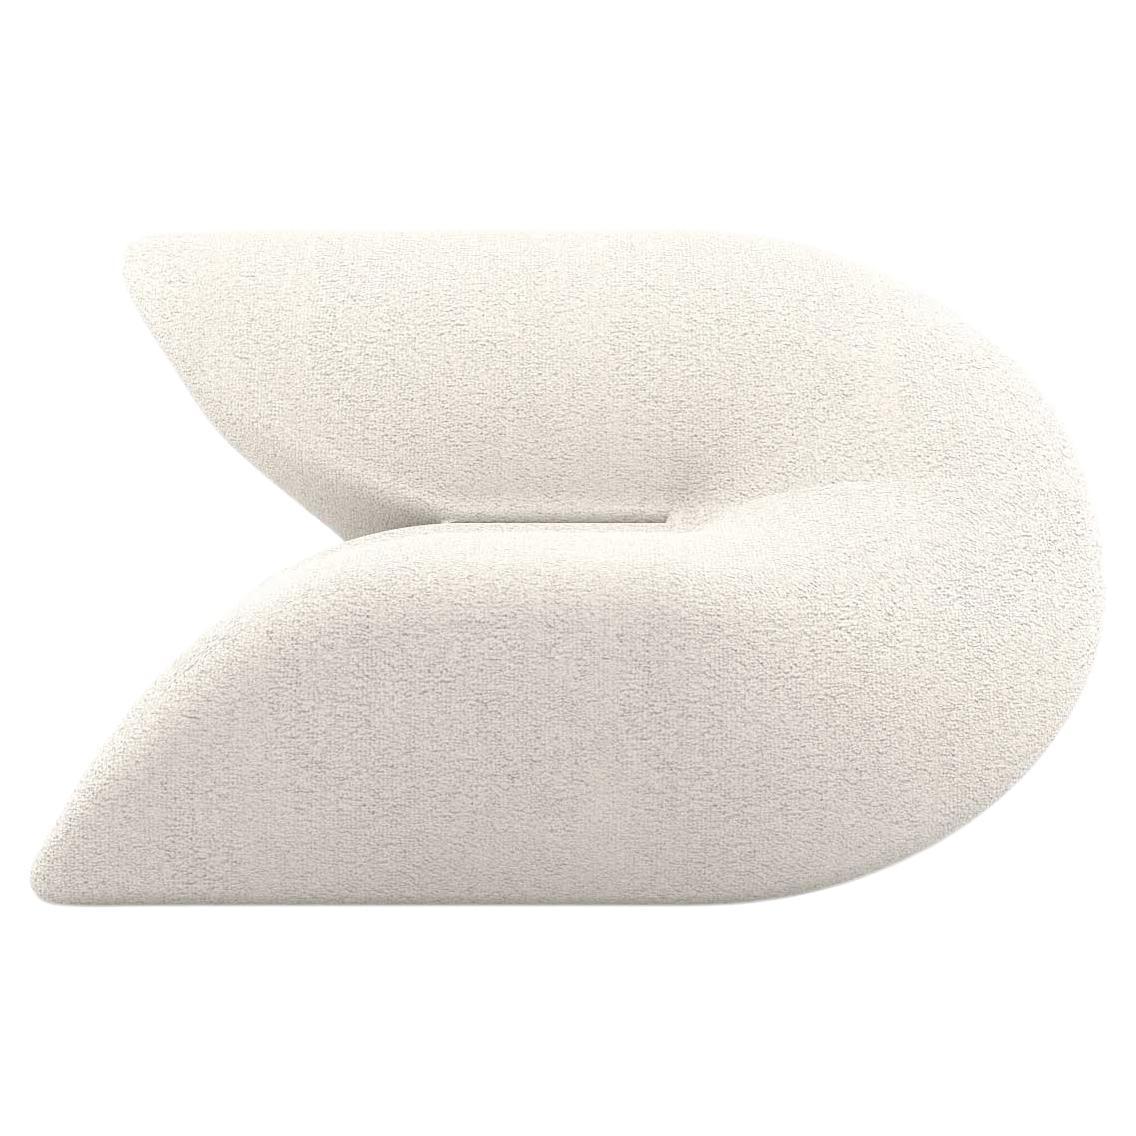 Delta Armchair - Modern White Upholstered Armchair